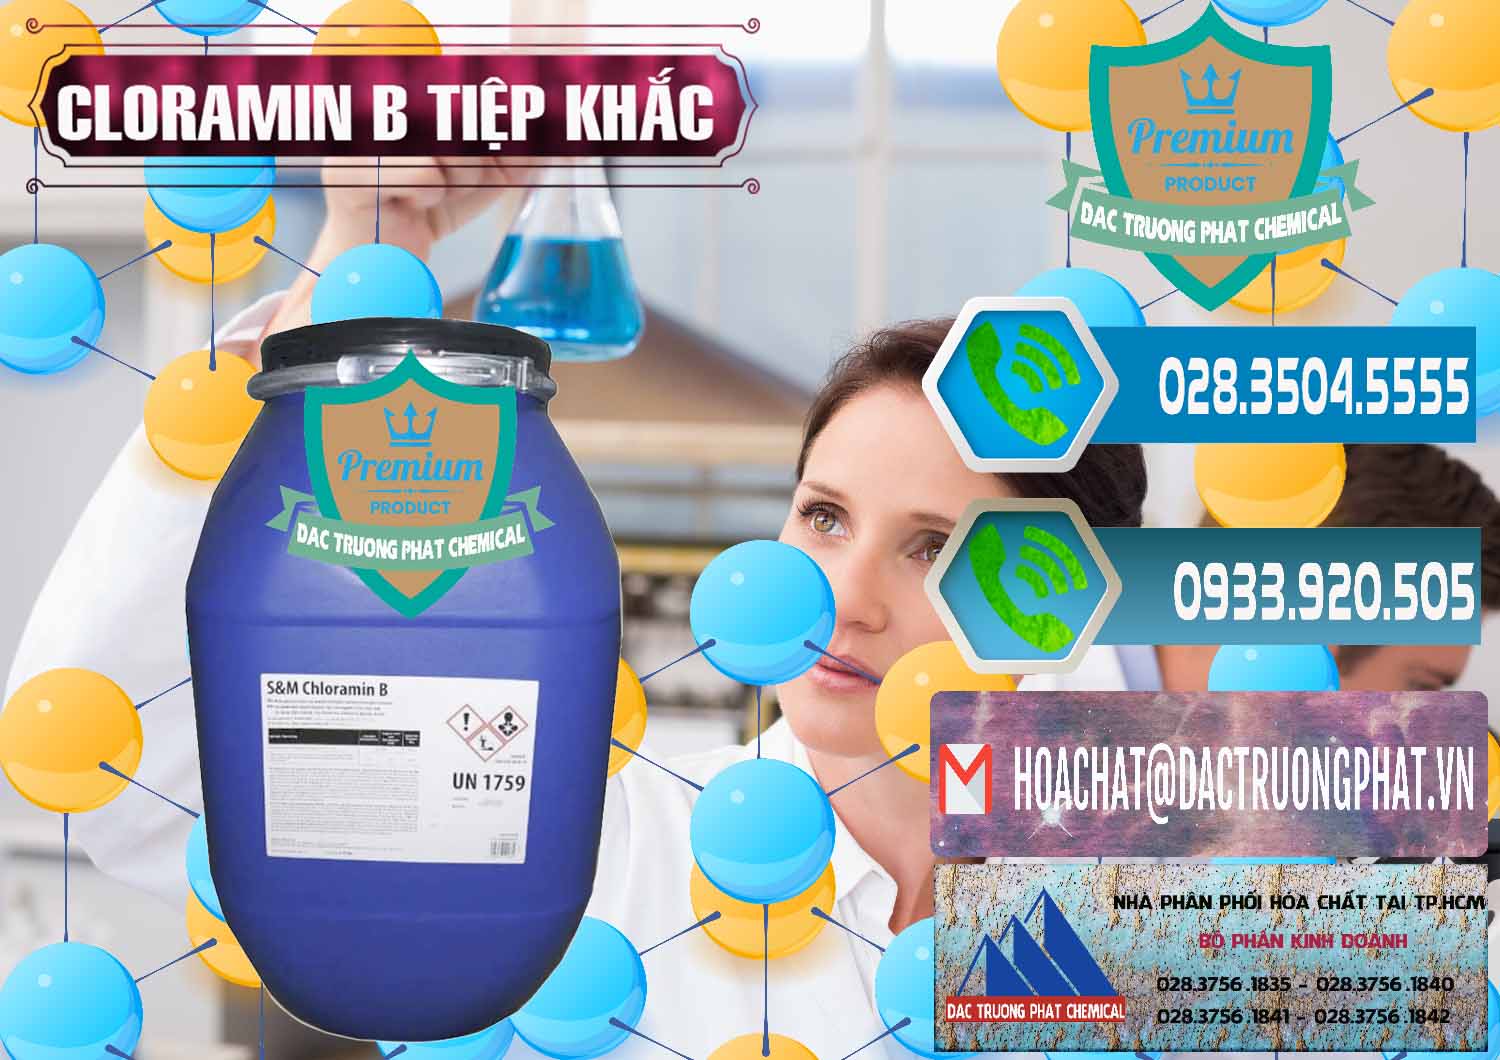 Phân phối và bán Cloramin B Cộng Hòa Séc Tiệp Khắc Czech Republic - 0299 - Chuyên nhập khẩu và phân phối hóa chất tại TP.HCM - congtyhoachat.net